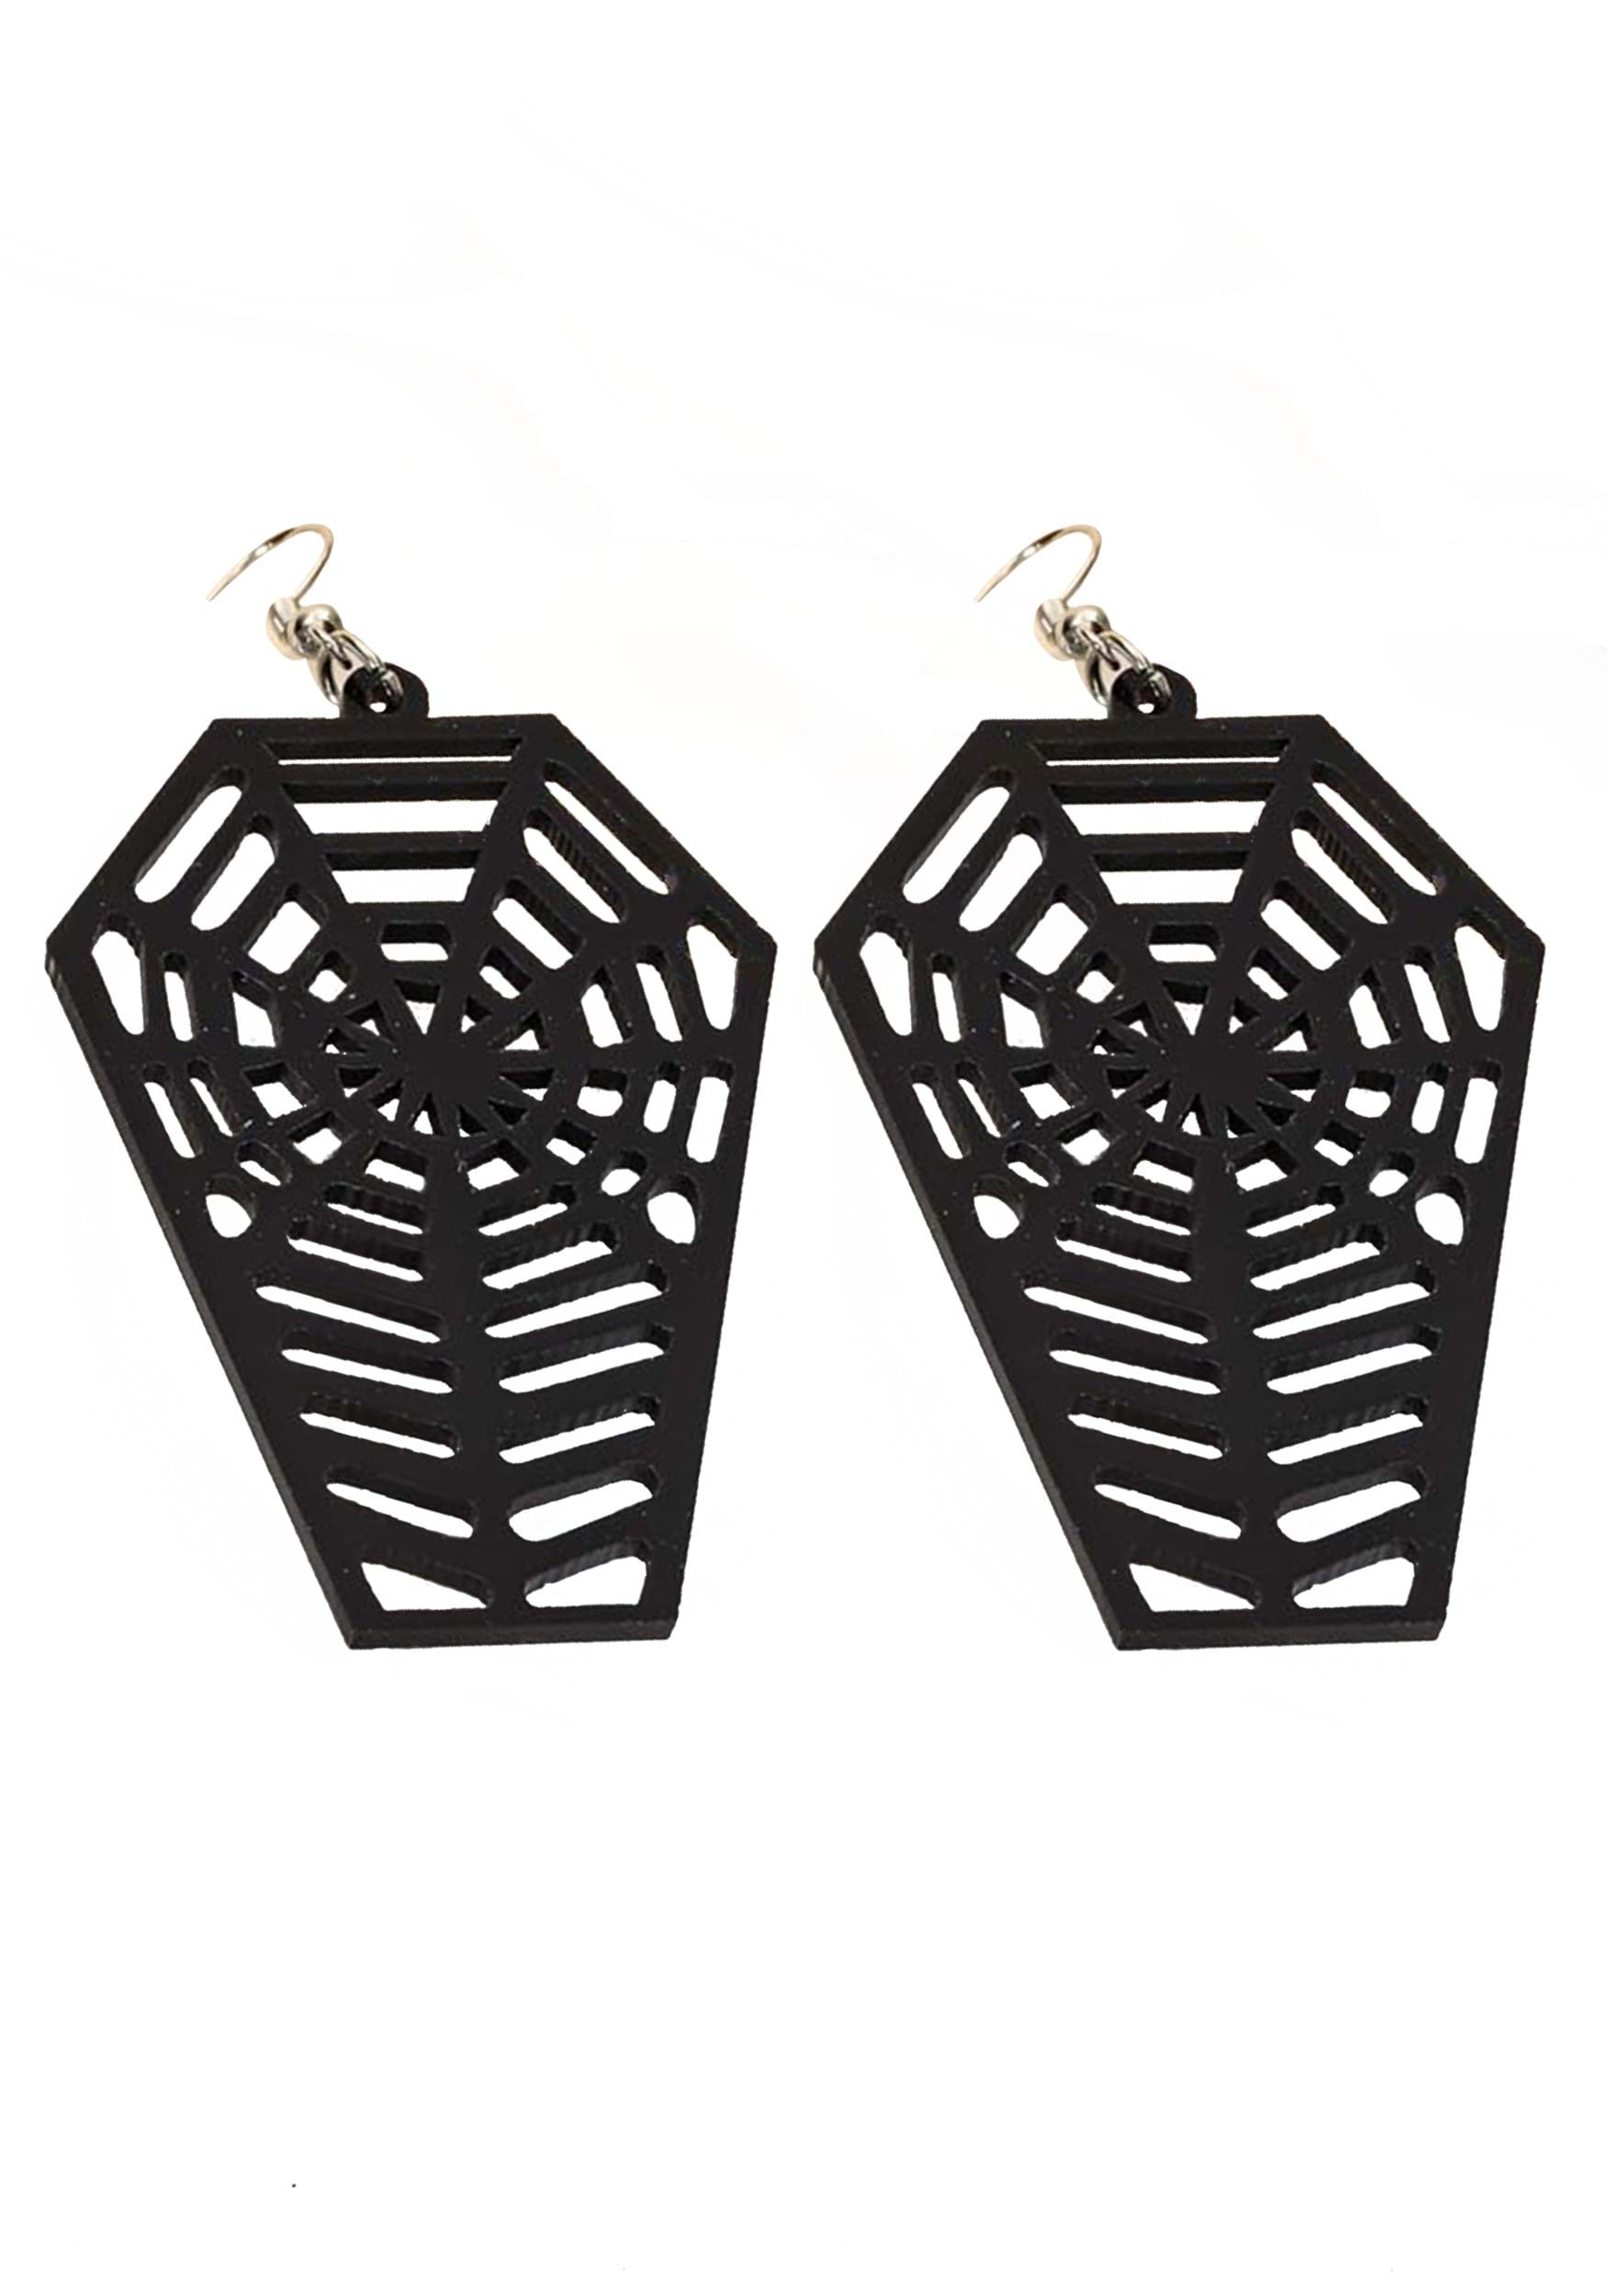 Spiderweb Coffin Fancy Dress Costume Earrings